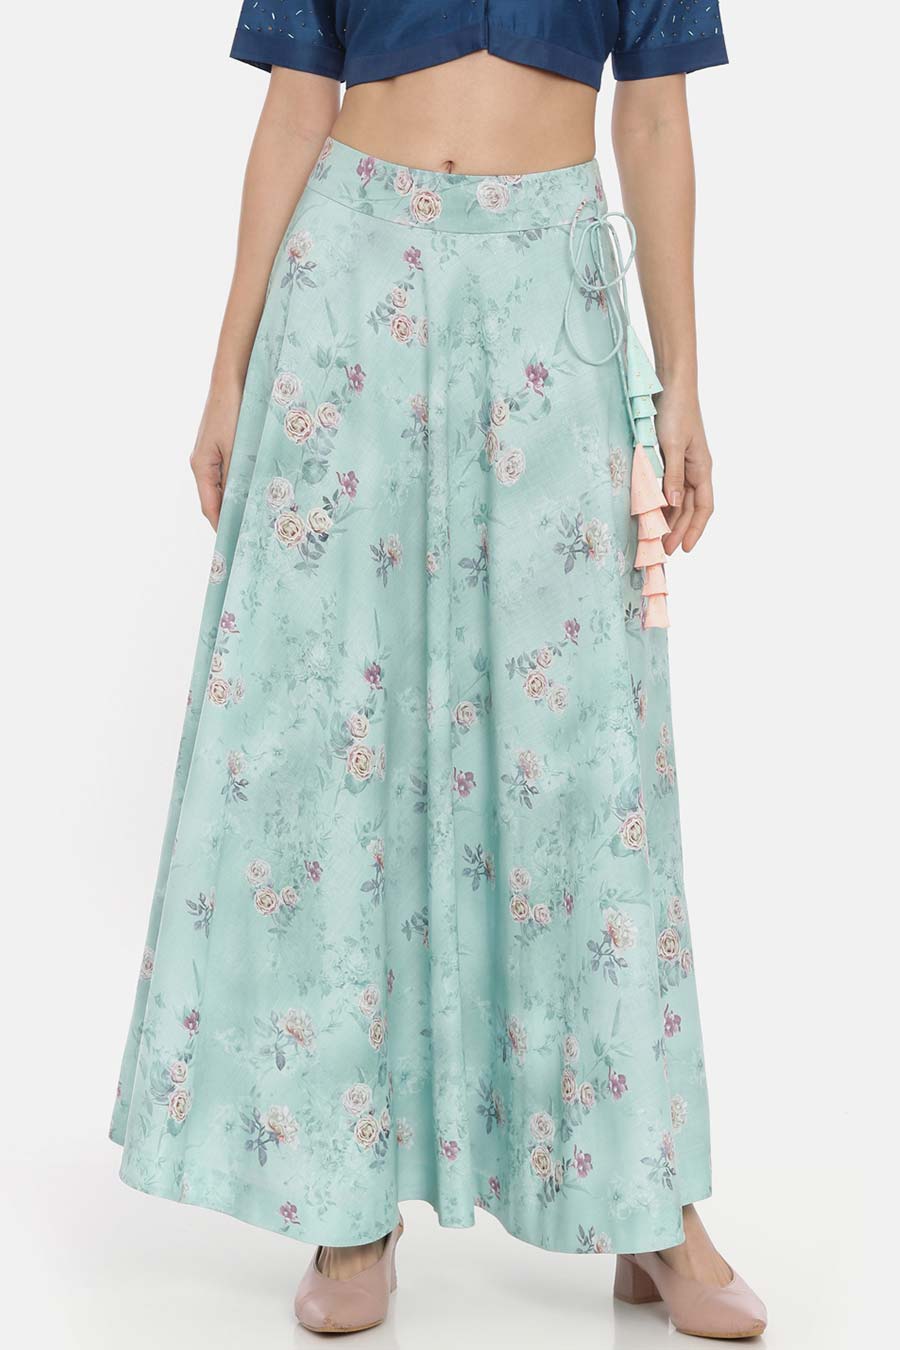 Floral Mint Linen Lehenga Skirt